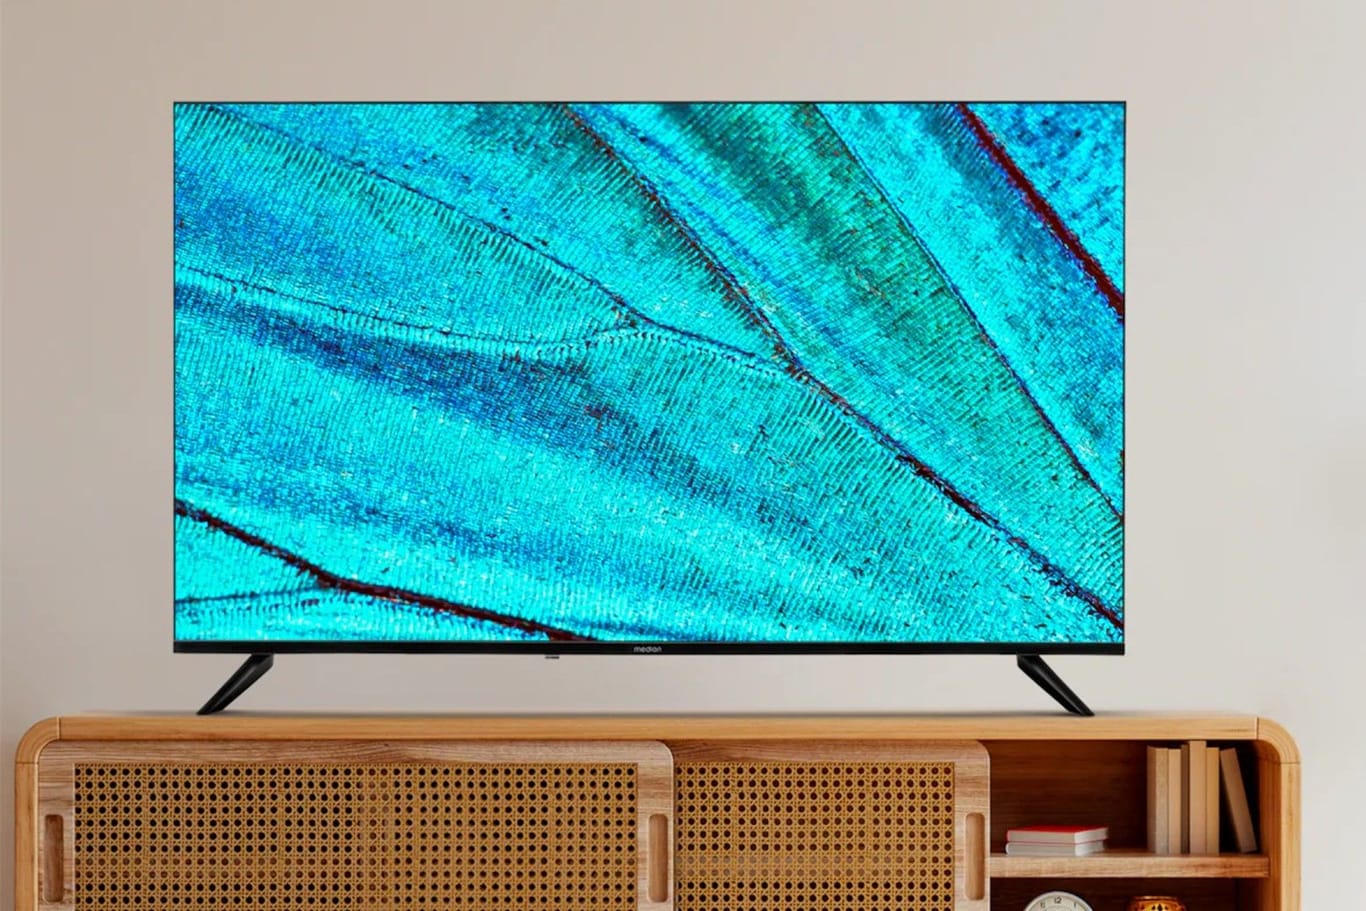 Discounter-Deal: Den UHD-Smart-TV X15015 von Medion sichern Sie sich jetzt im Aldi-Onlineshop zum Tiefpreis.